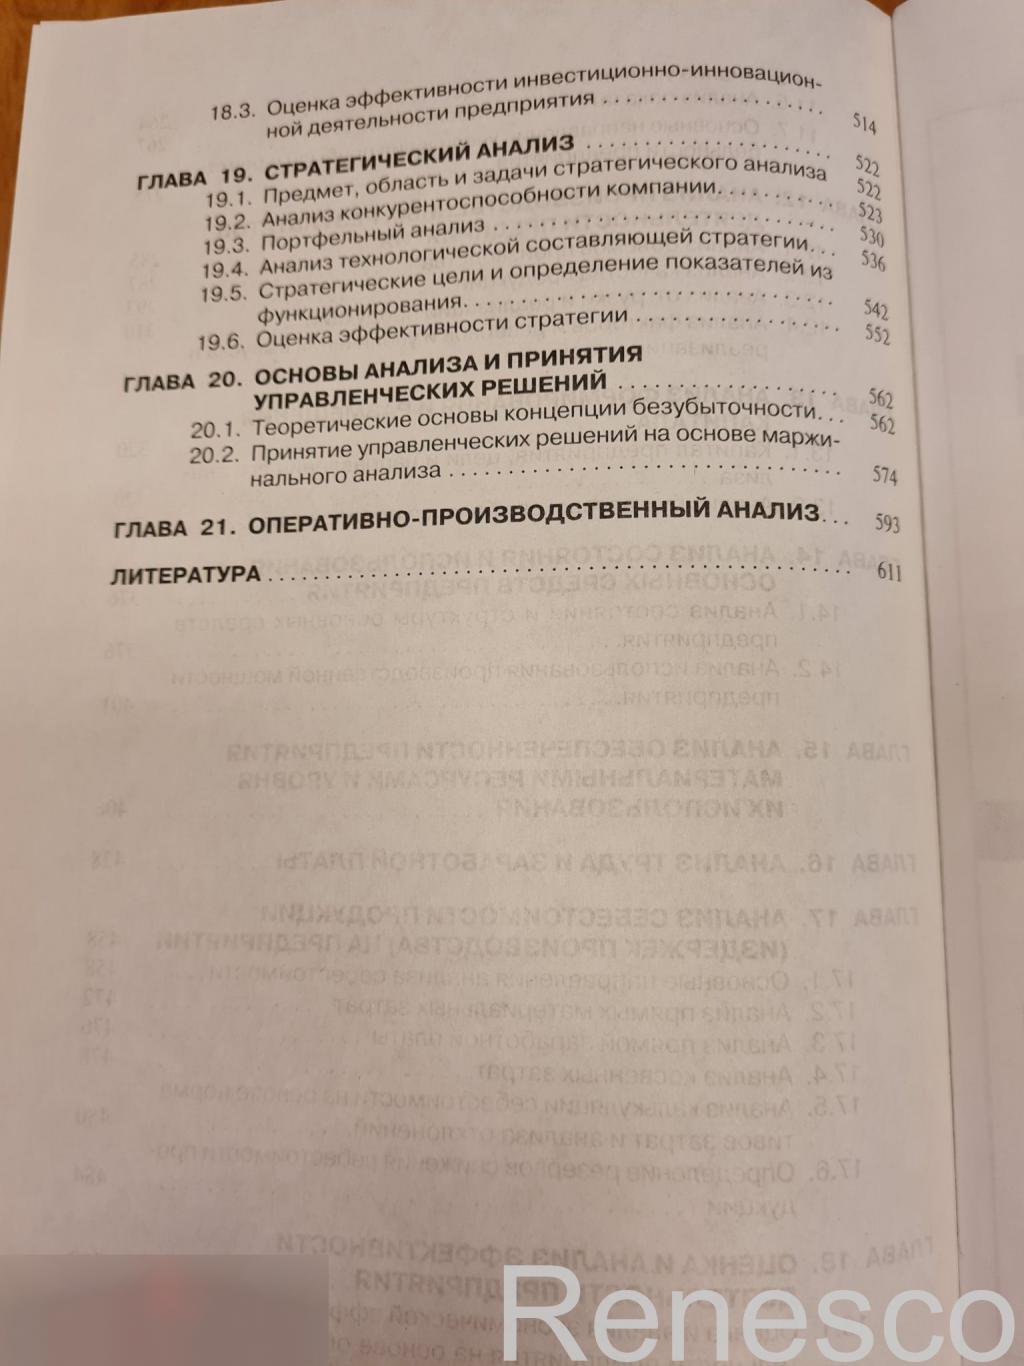 Учебник. Анализ и диагностика финансово-хозяйственной деятельности предприятий.7